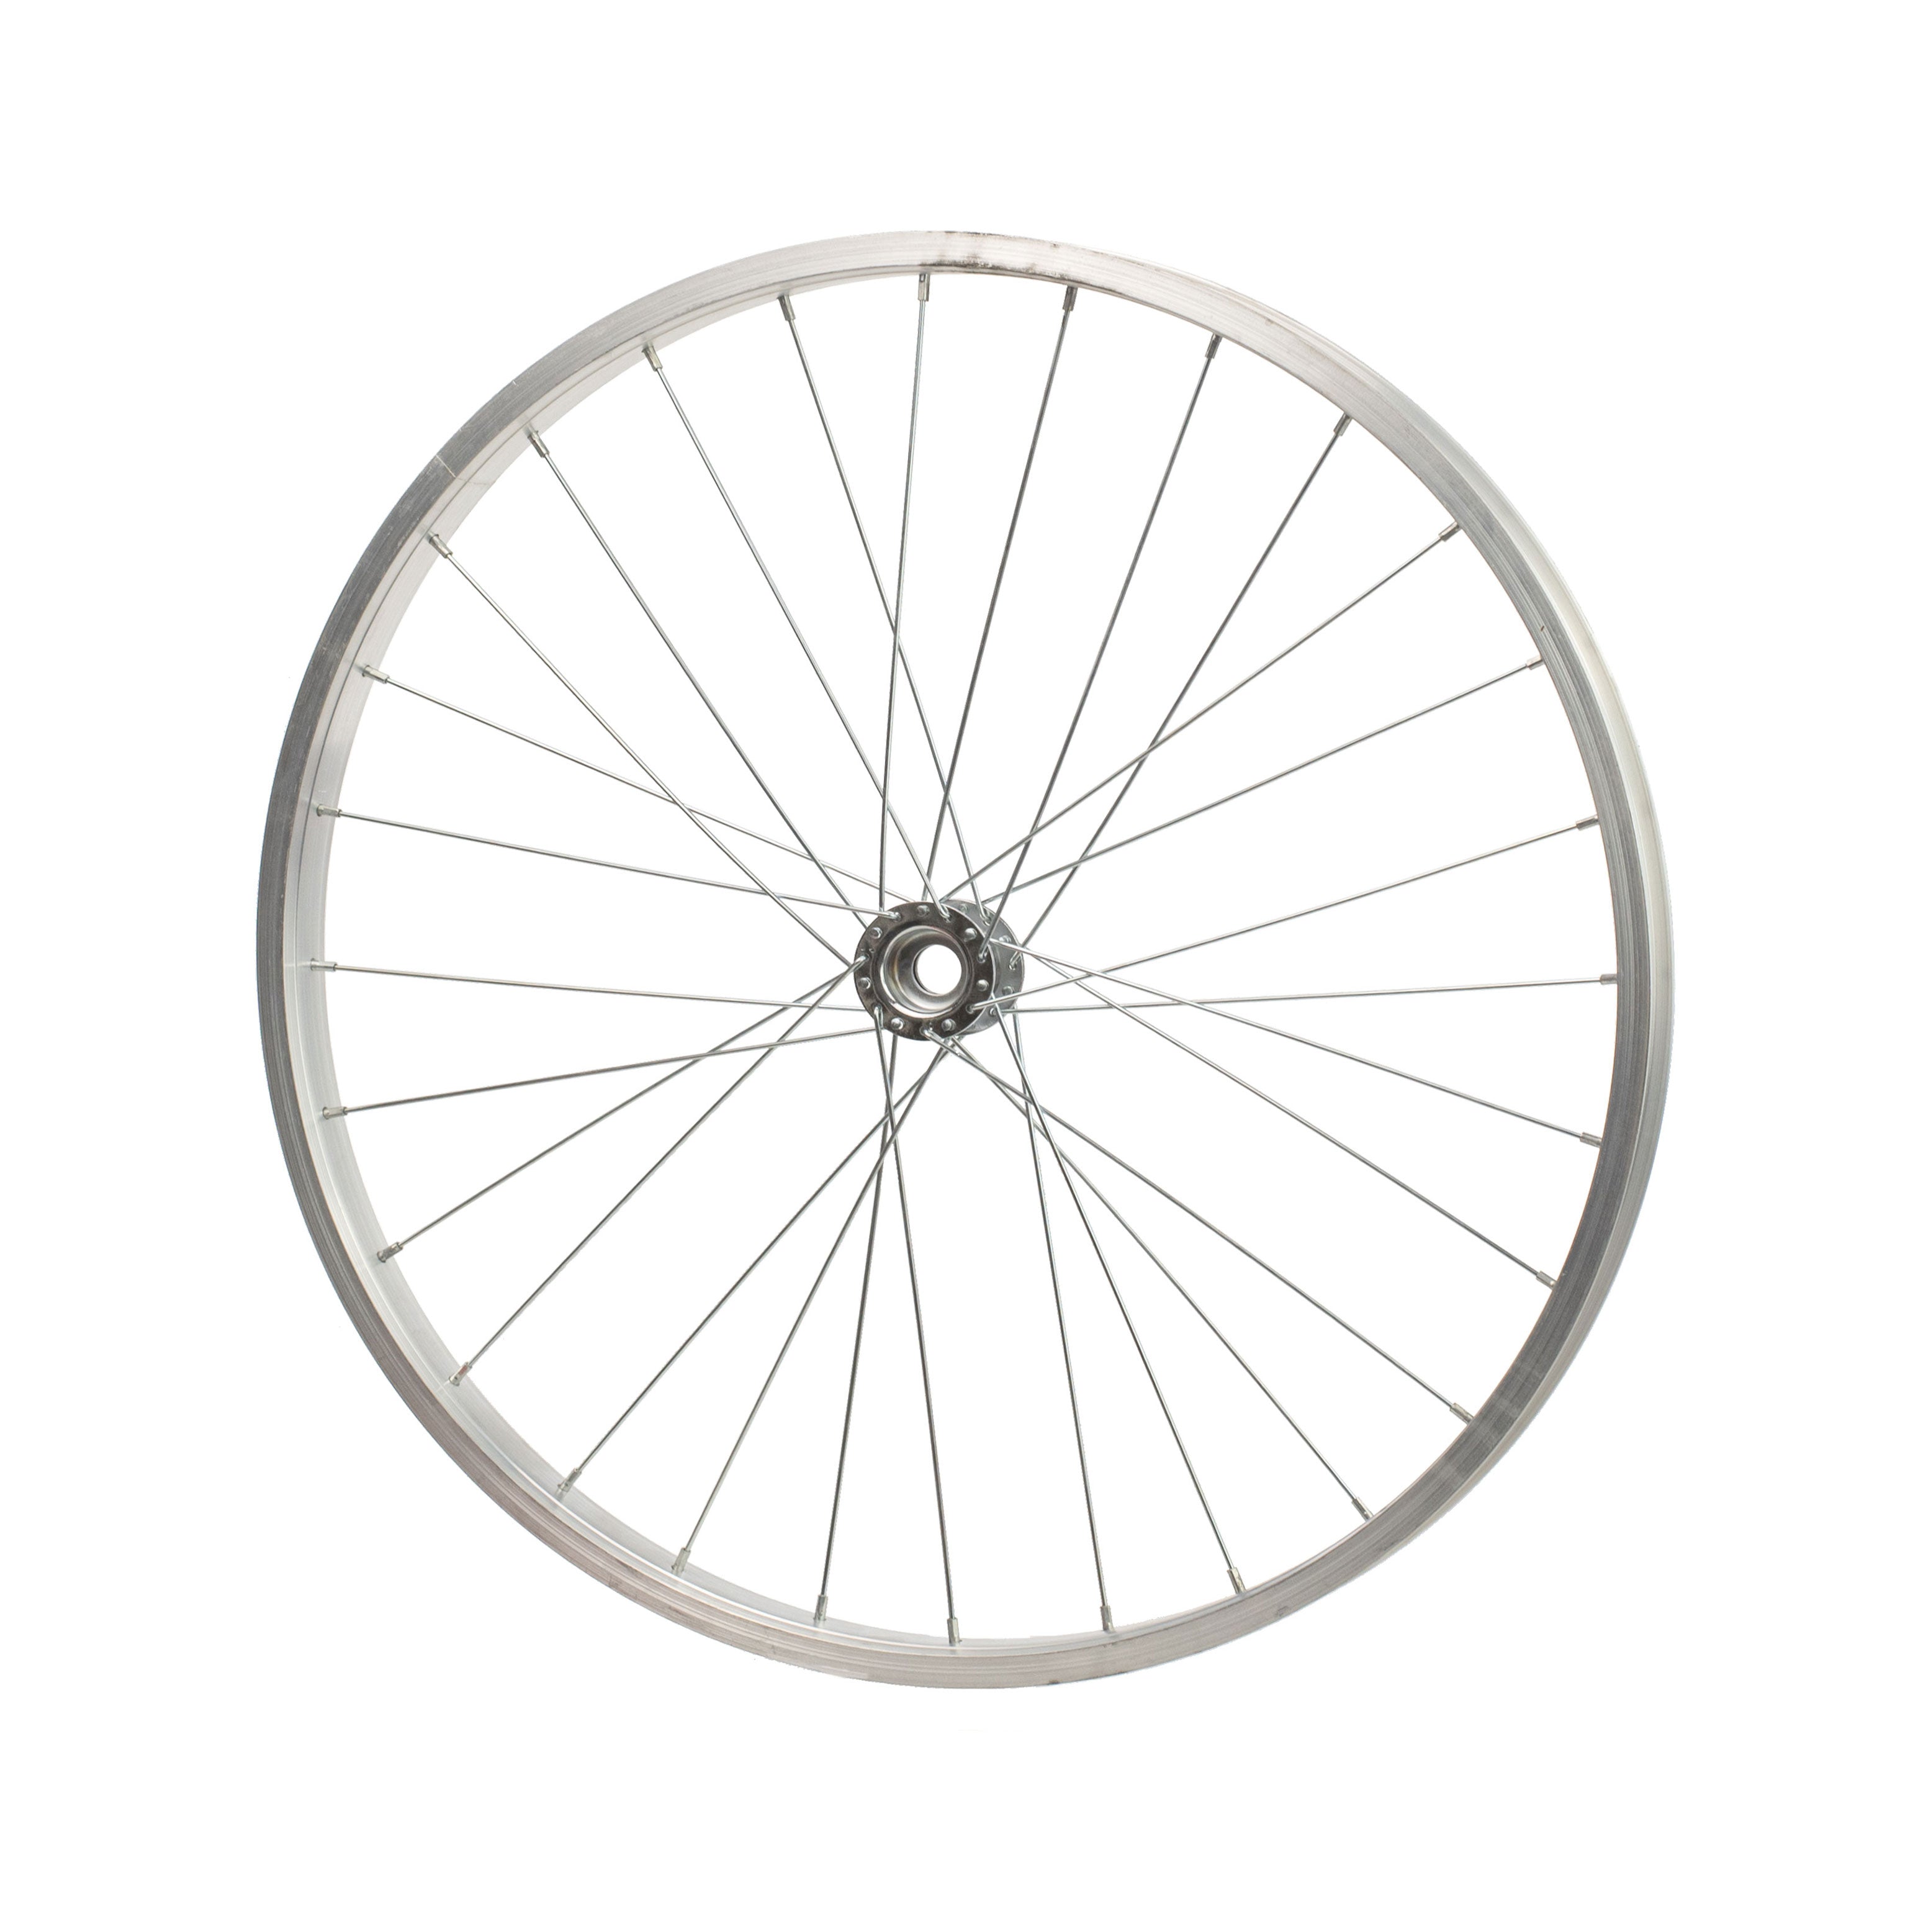 16" Decorative Bicycle Rim: Aluminum